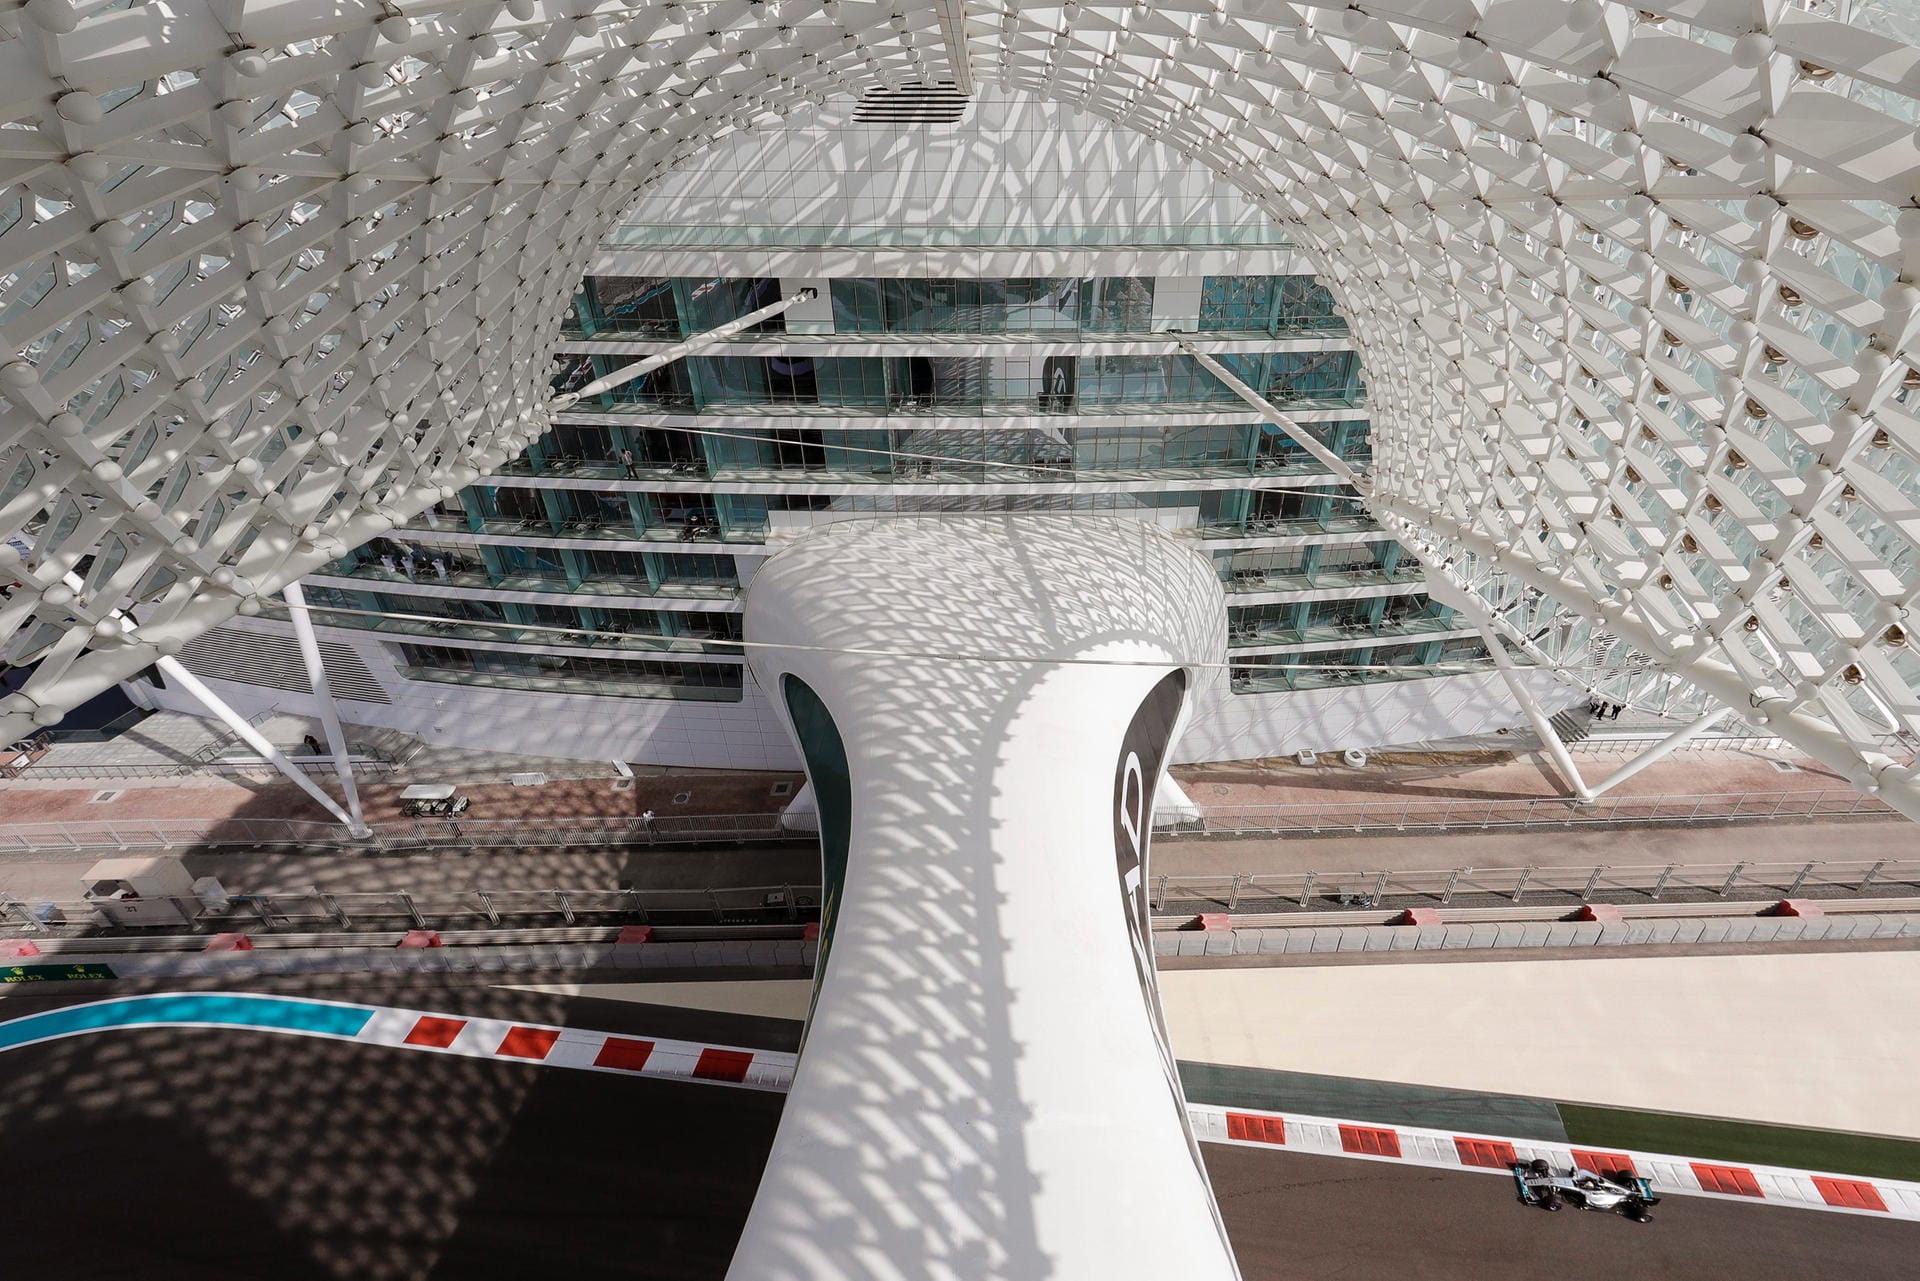 Vogelperspektive: Die Rennstrecke in Abu Dhabi mit ihren futuristischen Gebäuden ist spektakulär.